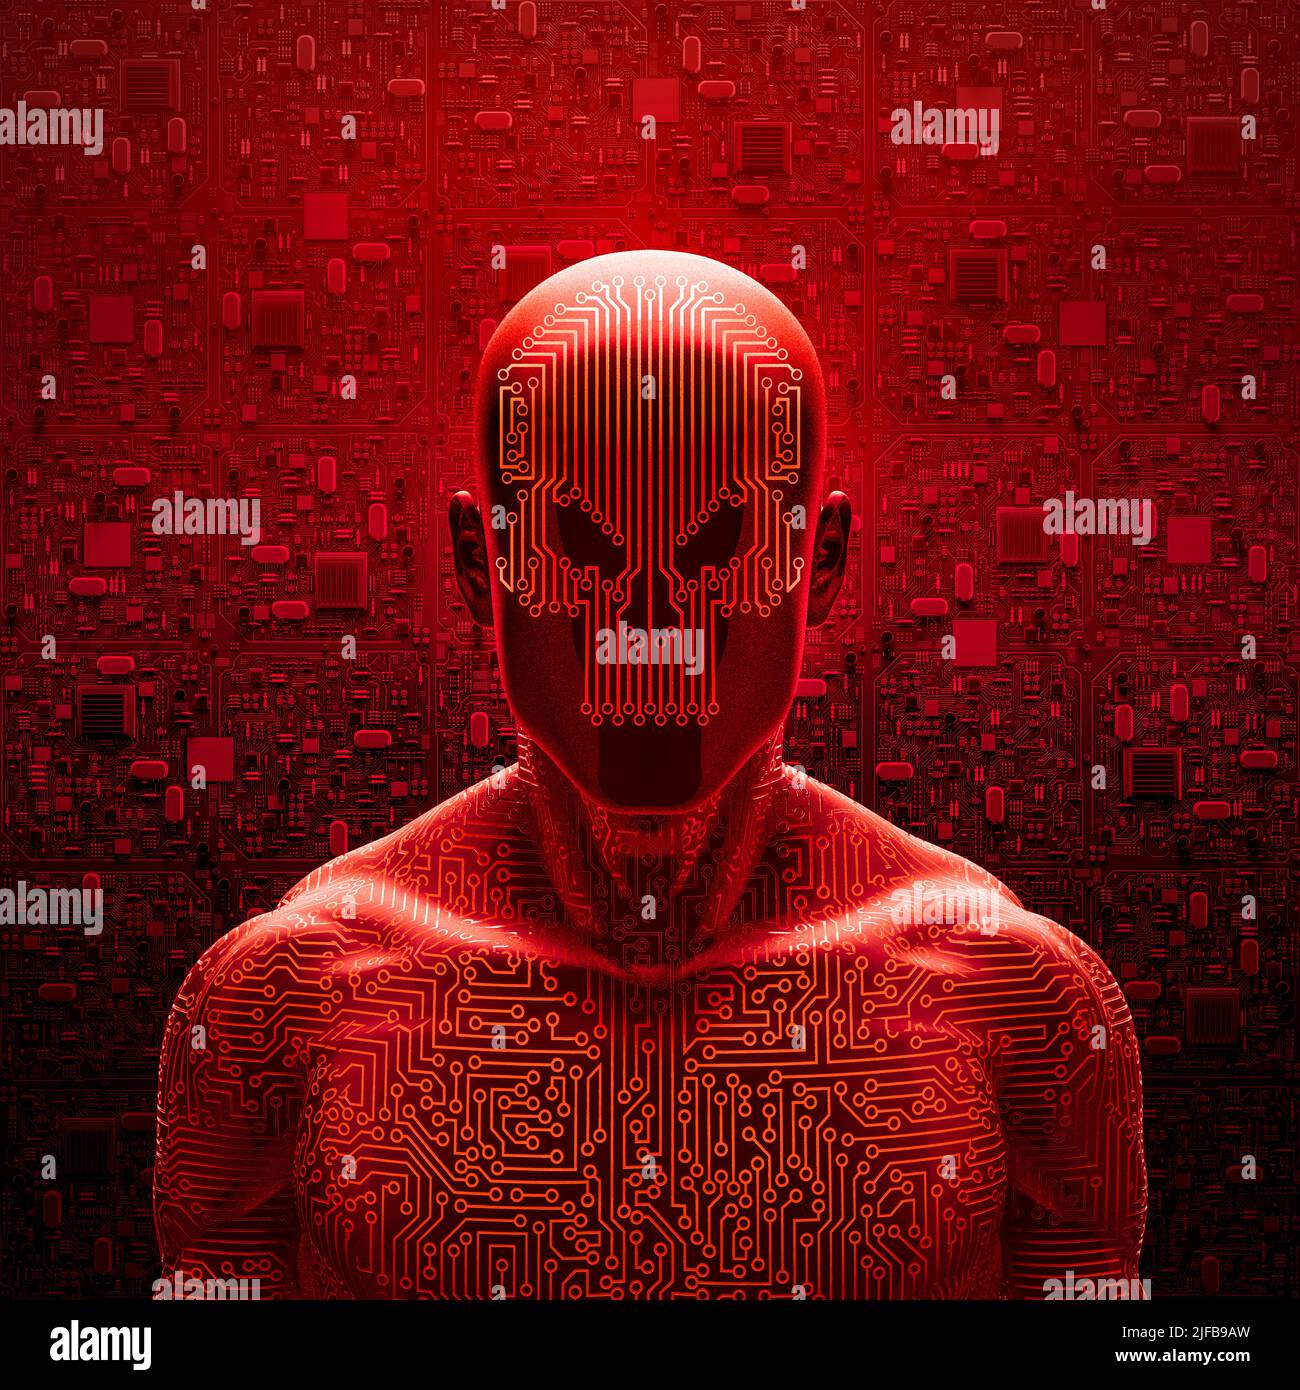 Böse künstliche Intelligenz - 3D Illustration von roten Schädel konfrontiert männlichen Roboter Figur mit abstrakten Computer-Platine Hintergrund Stockfoto